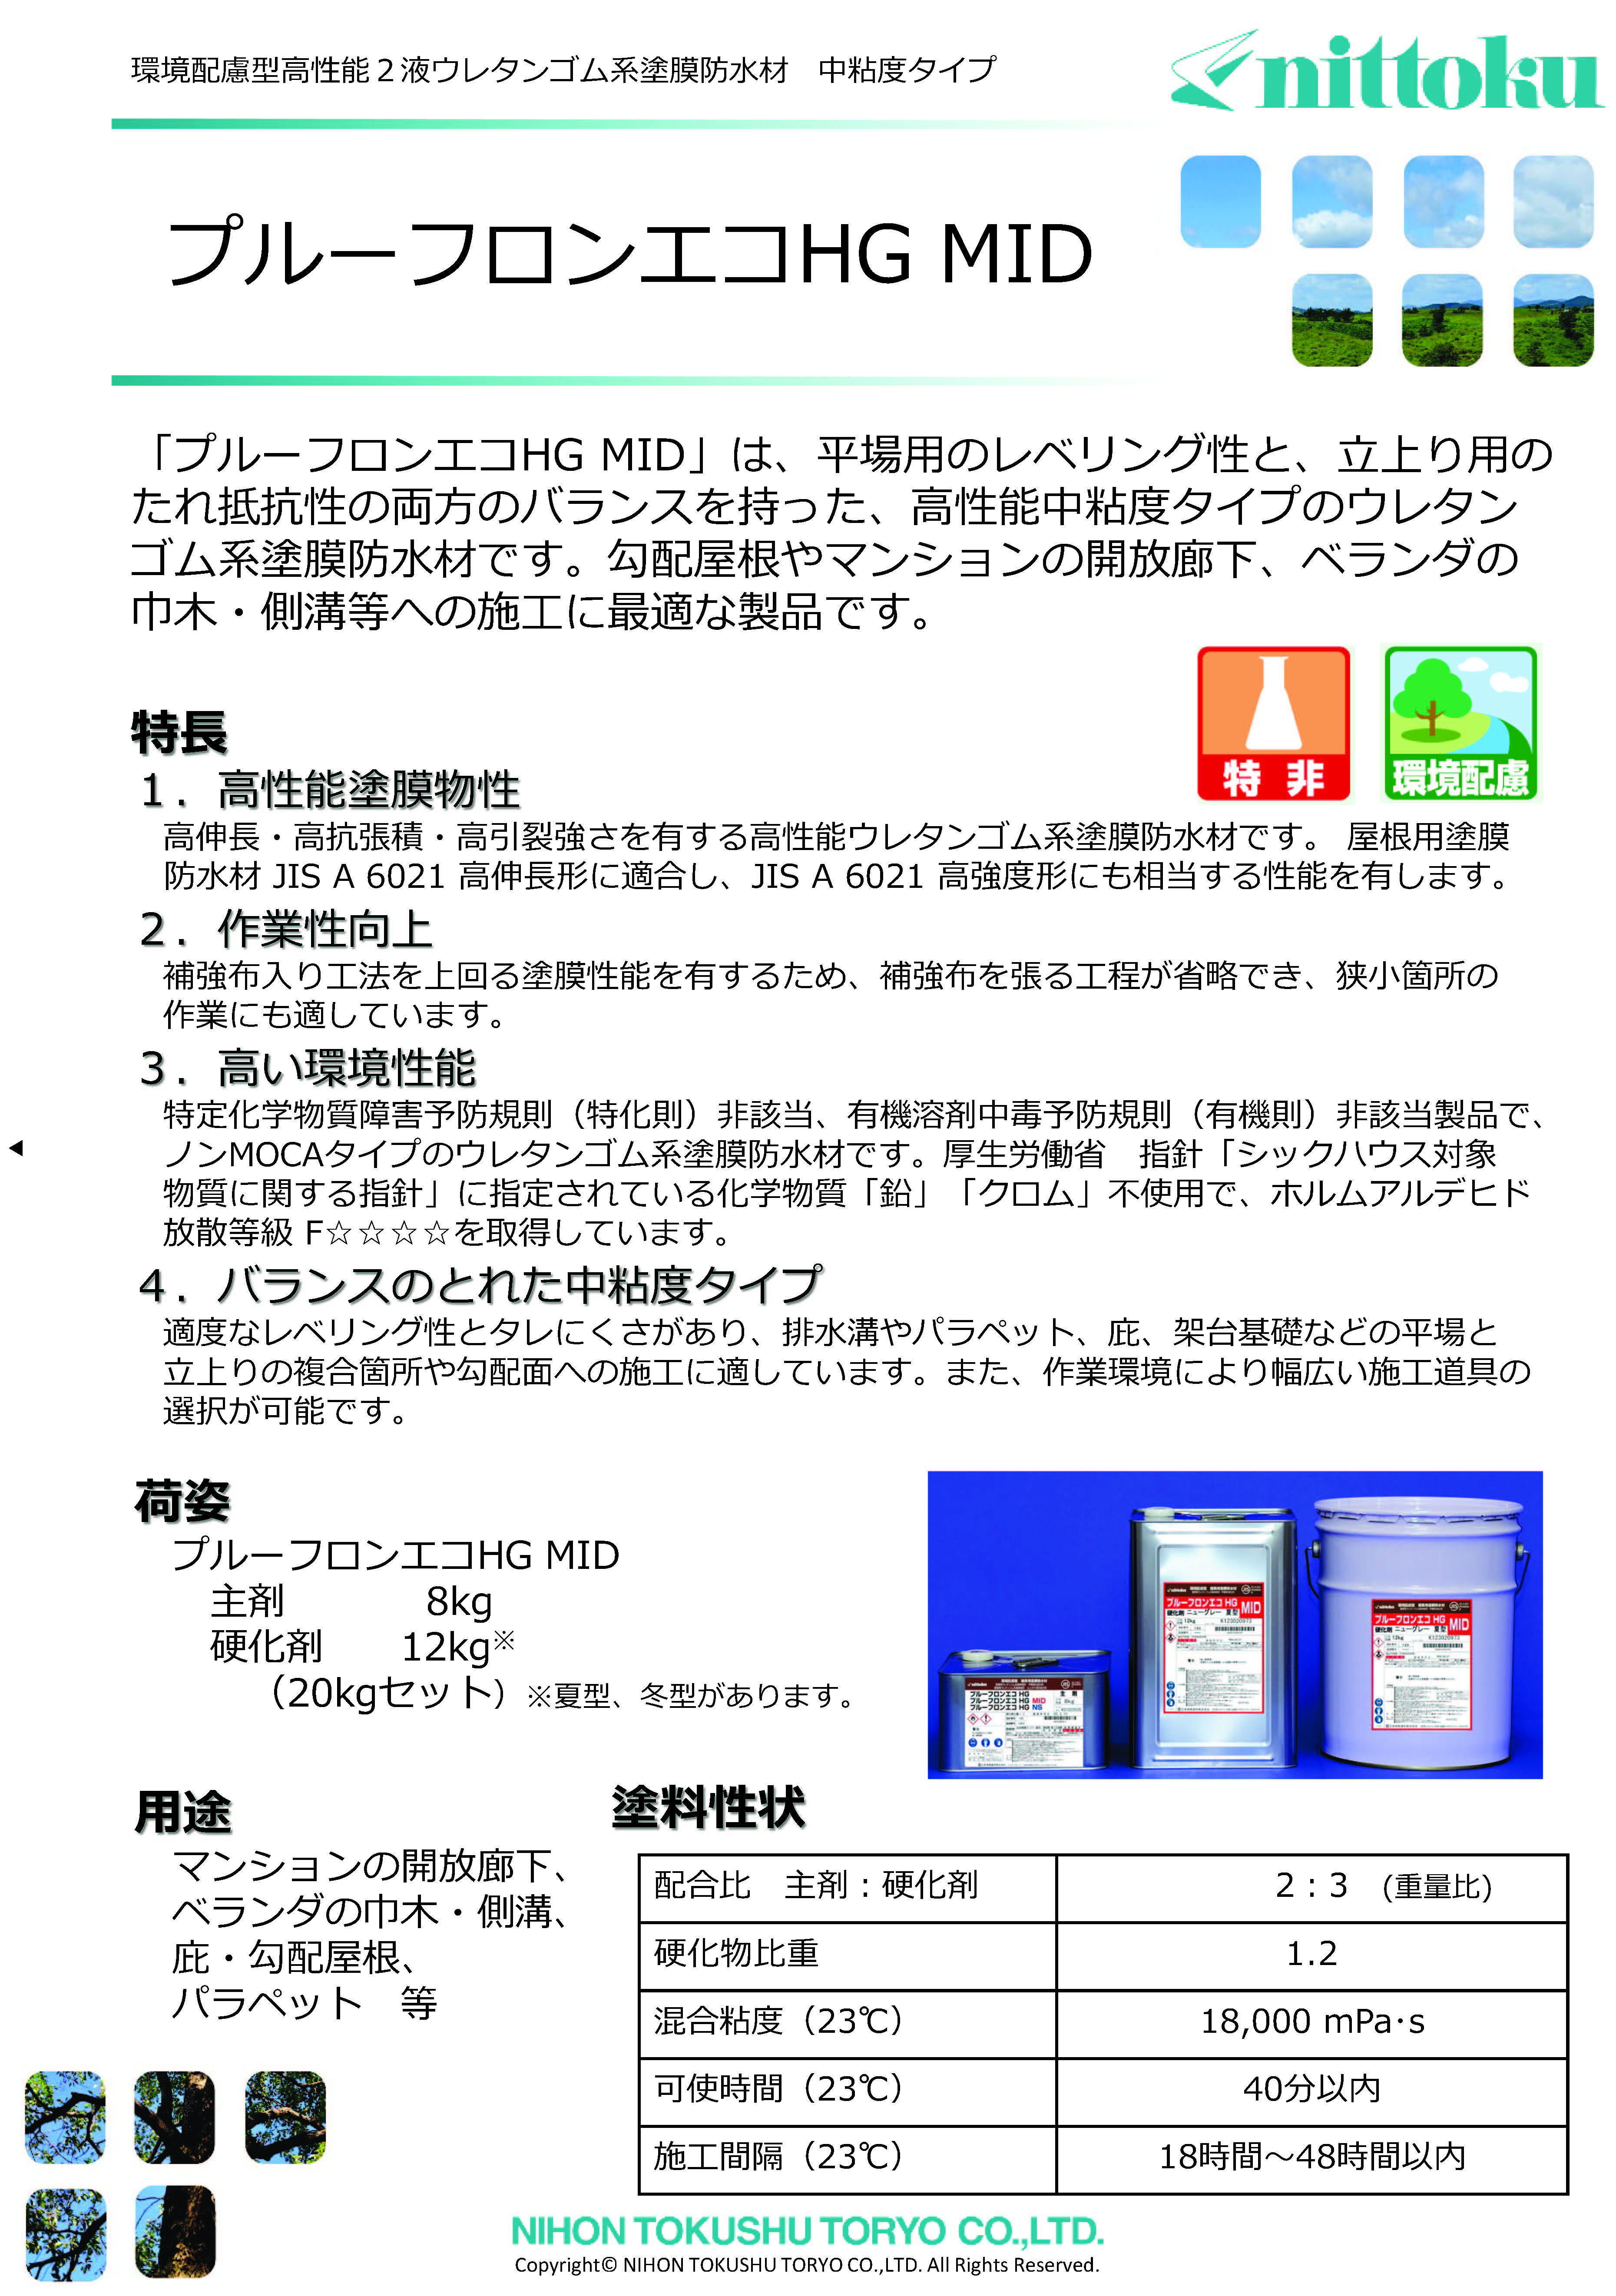 ユータックスーパーFハードN 15kgセット 標準色 日本特殊塗料 - 3